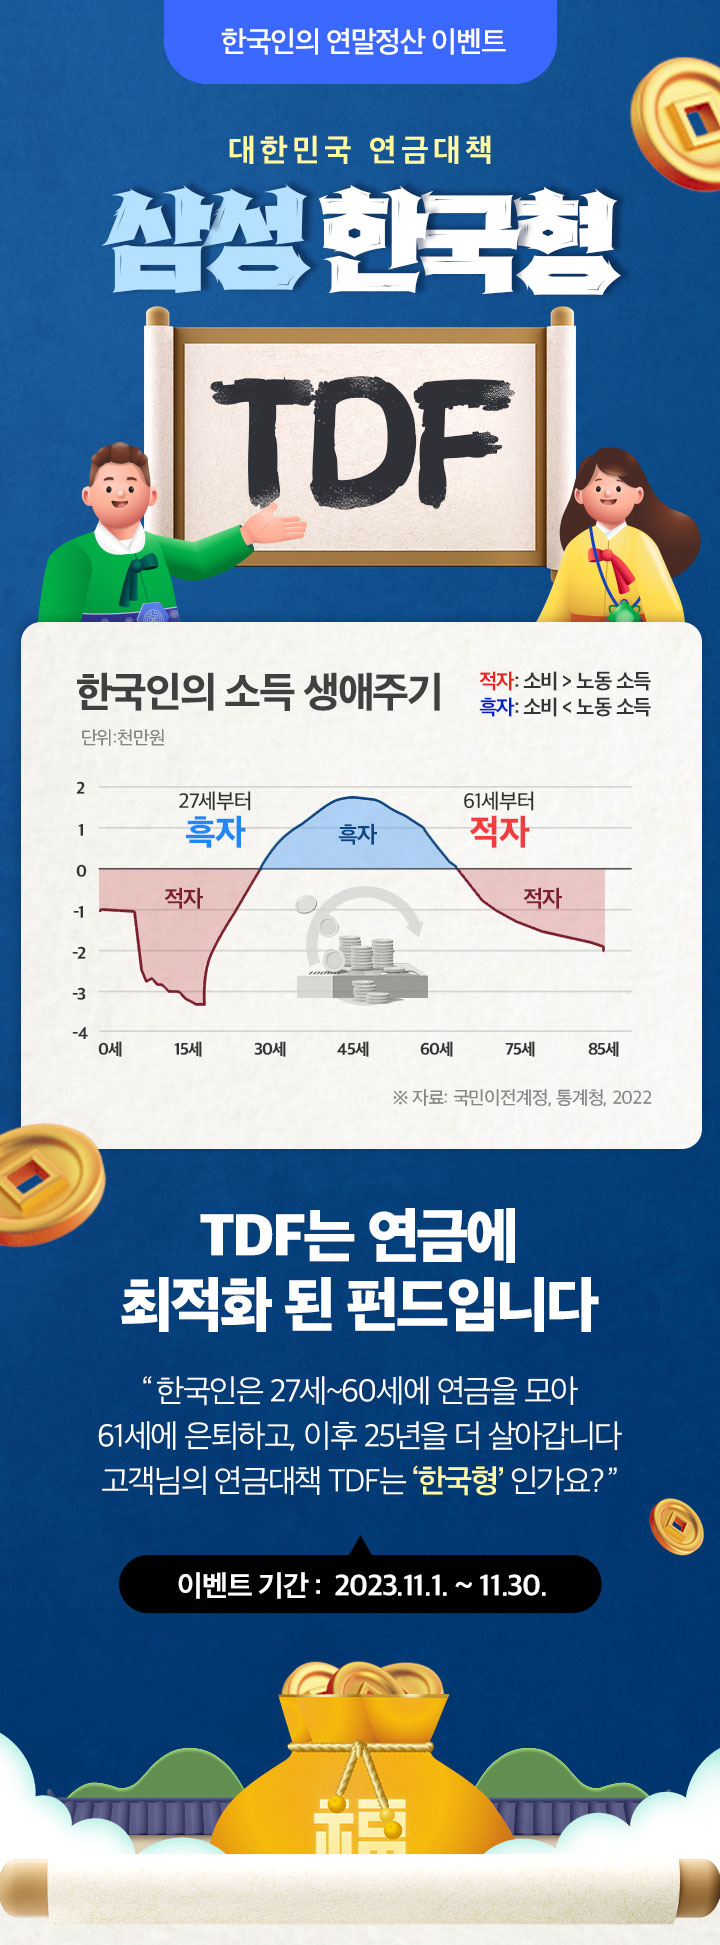 한국인의 연말정산 이벤트 						대한민국 연금대책 						삼성 한국형 TDF 						한국인의 소득 생애주기 						TDF는 연금에 최적화 된 펀드입니다 						“한국인은 27세~60세에 연금을 모아 61세에 은퇴하고, 이후 25년을 더 살아갑니다. 고객님의 연금대책 TDF는 ‘한국형’ 인가요?” 						이벤트 기간 : 2023.11.1. ~ 11.30.